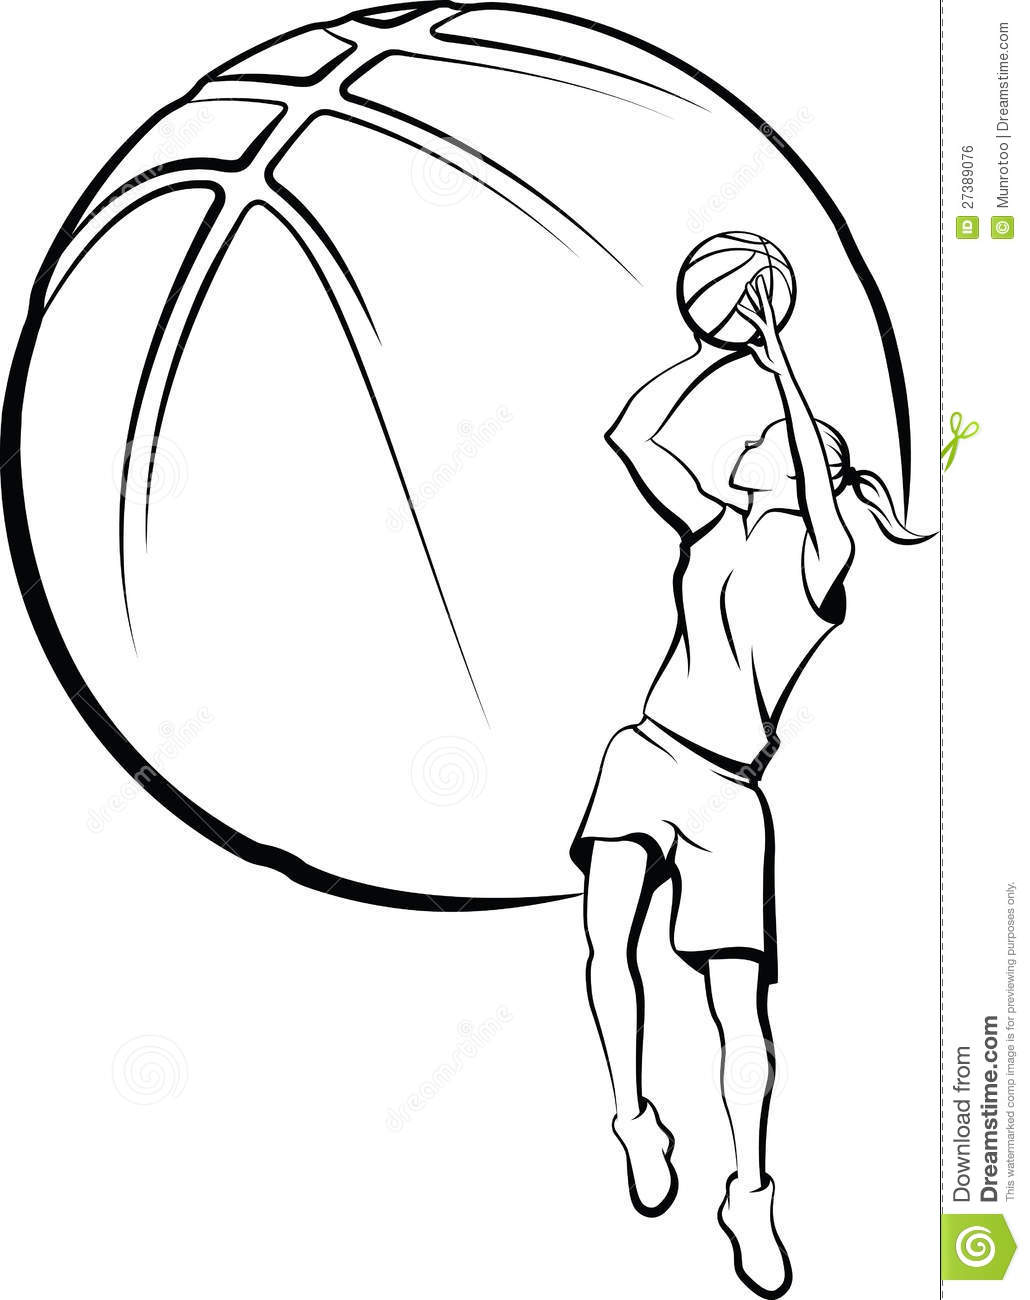 Girls basketball clipart.